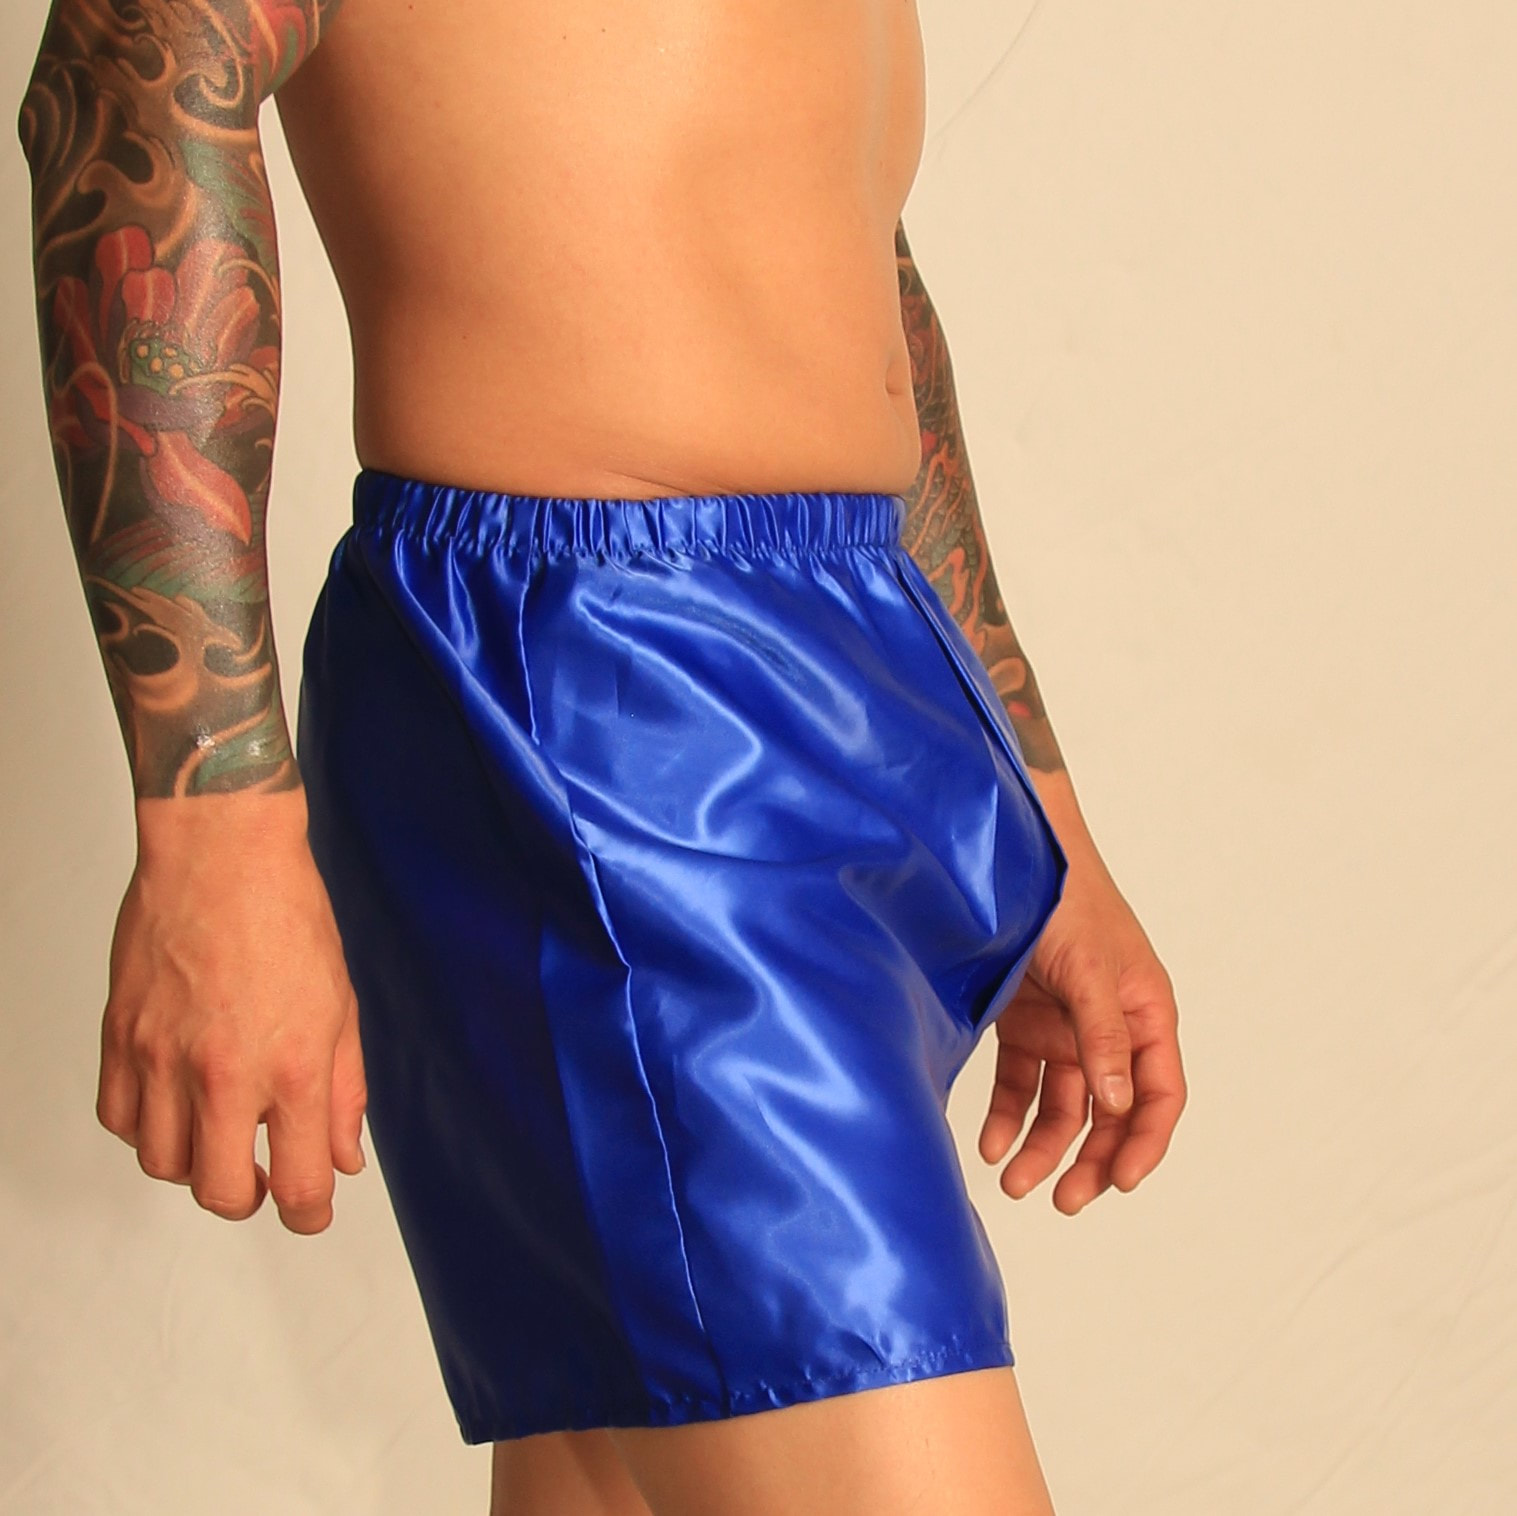 Poly Satin Boxer Shorts - Small to 4XL - Royal